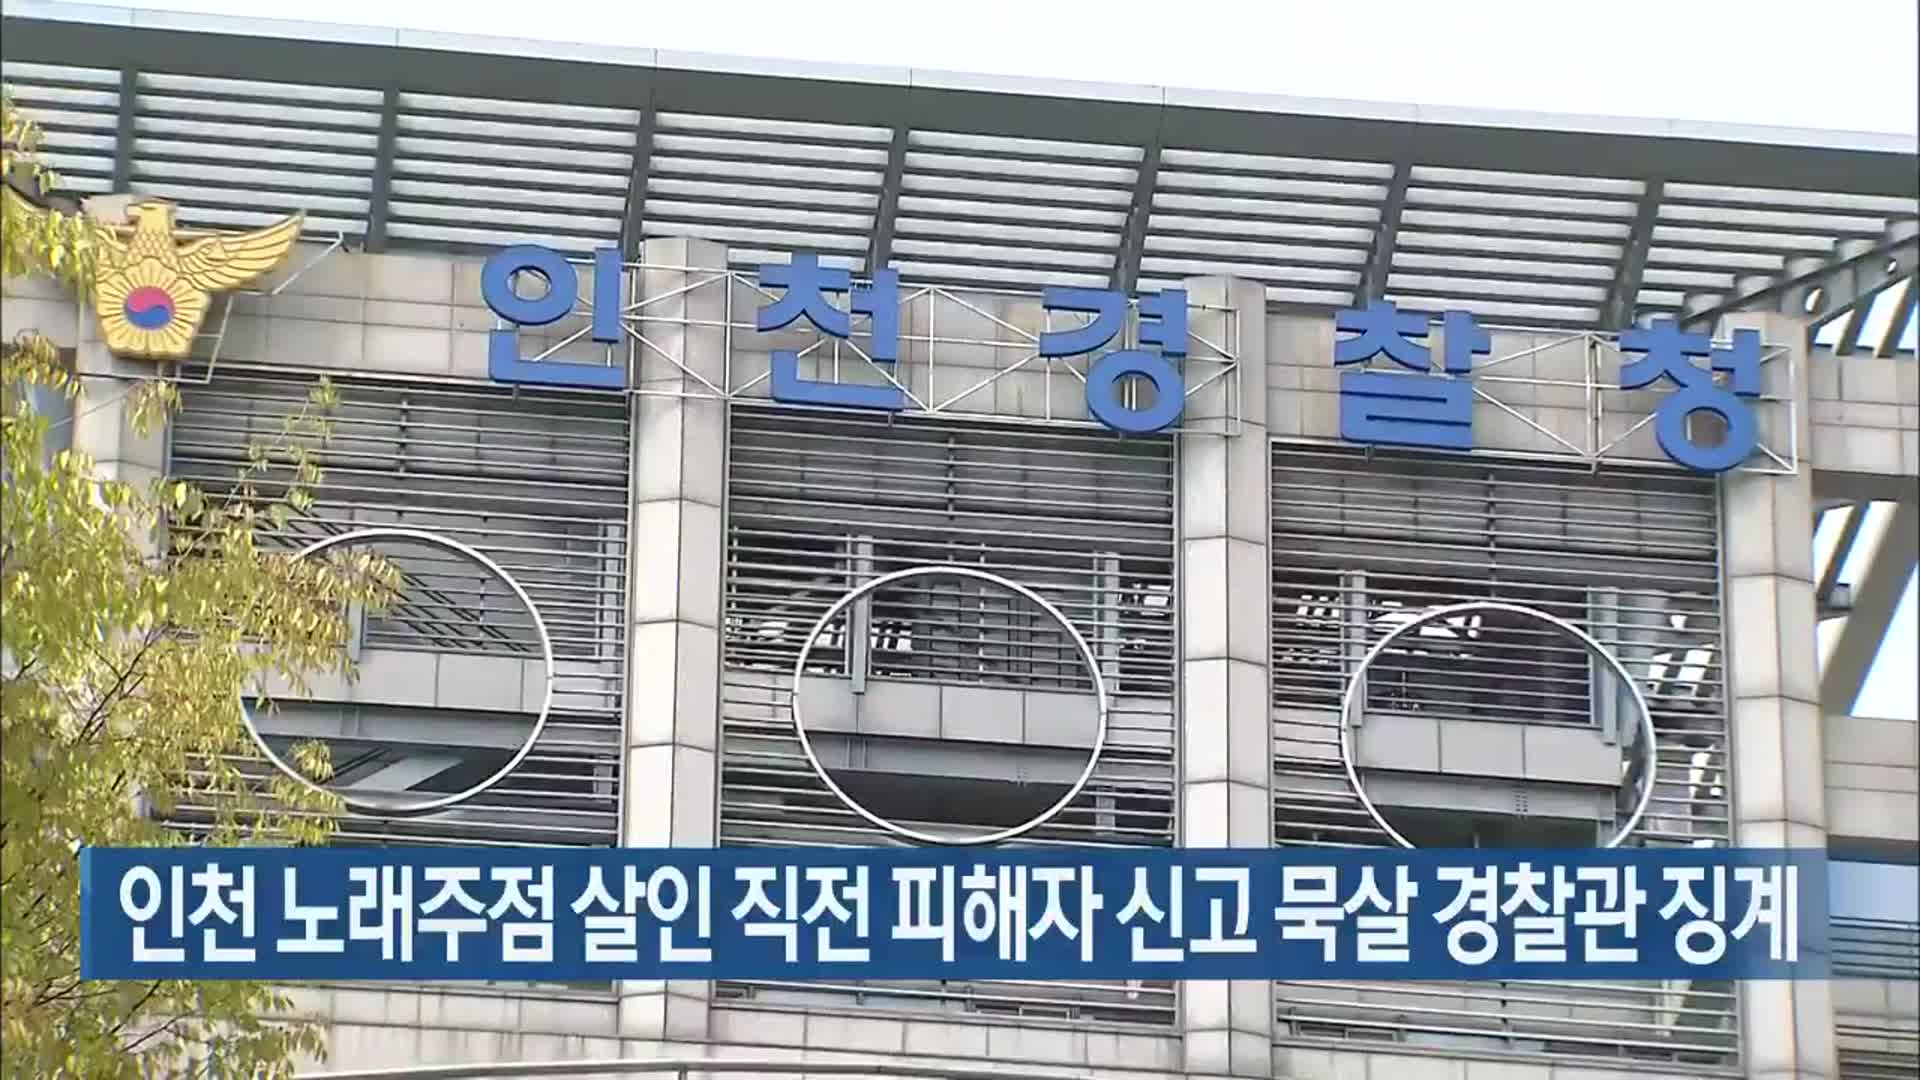 인천 노래주점 살인 직전 피해자 신고 묵살 경찰관 징계